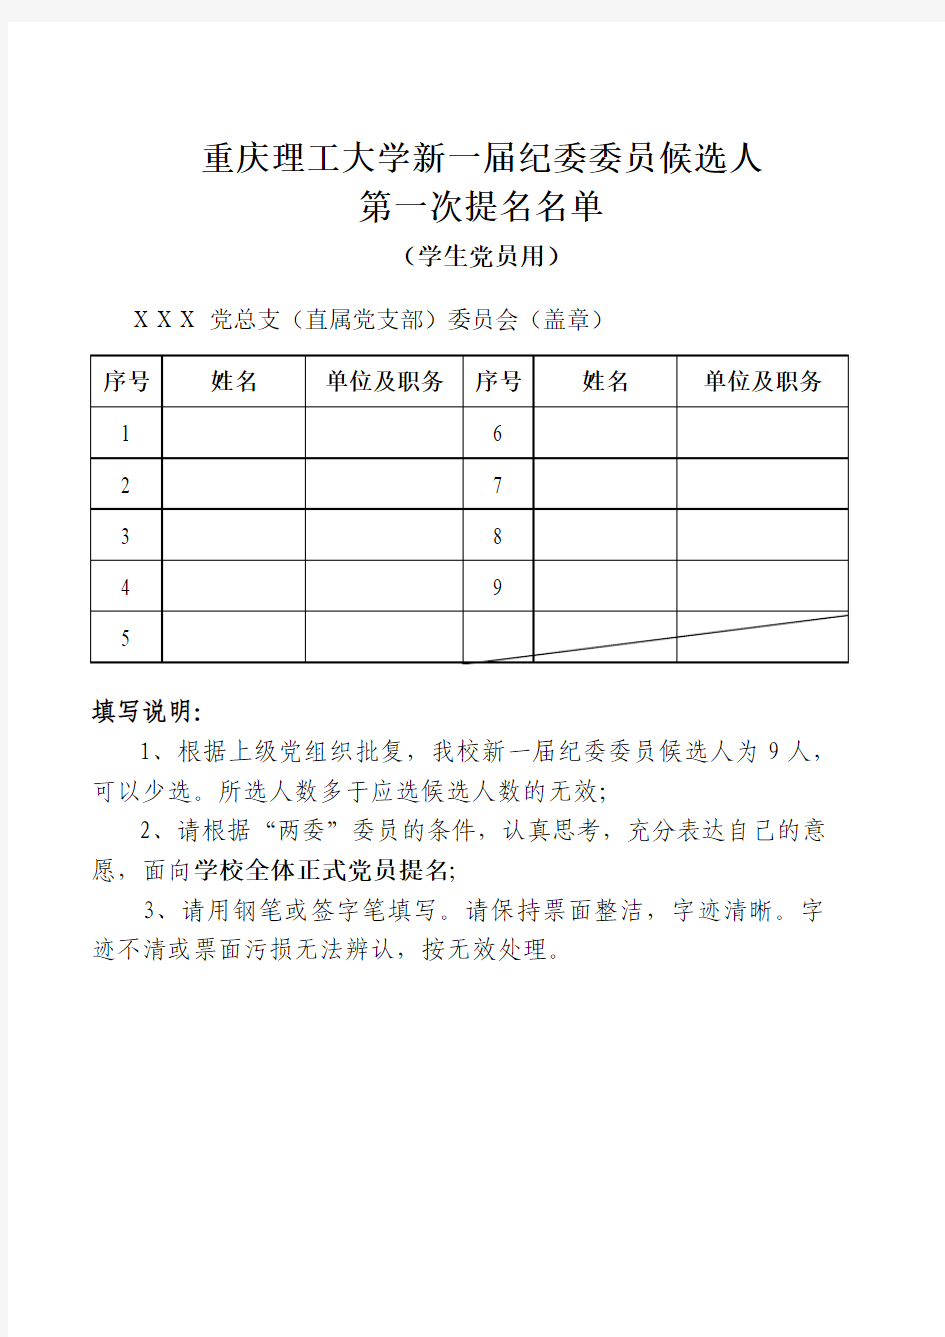 重庆理工大学第一届党委委员候选人第一次提名名单(学生党员用)